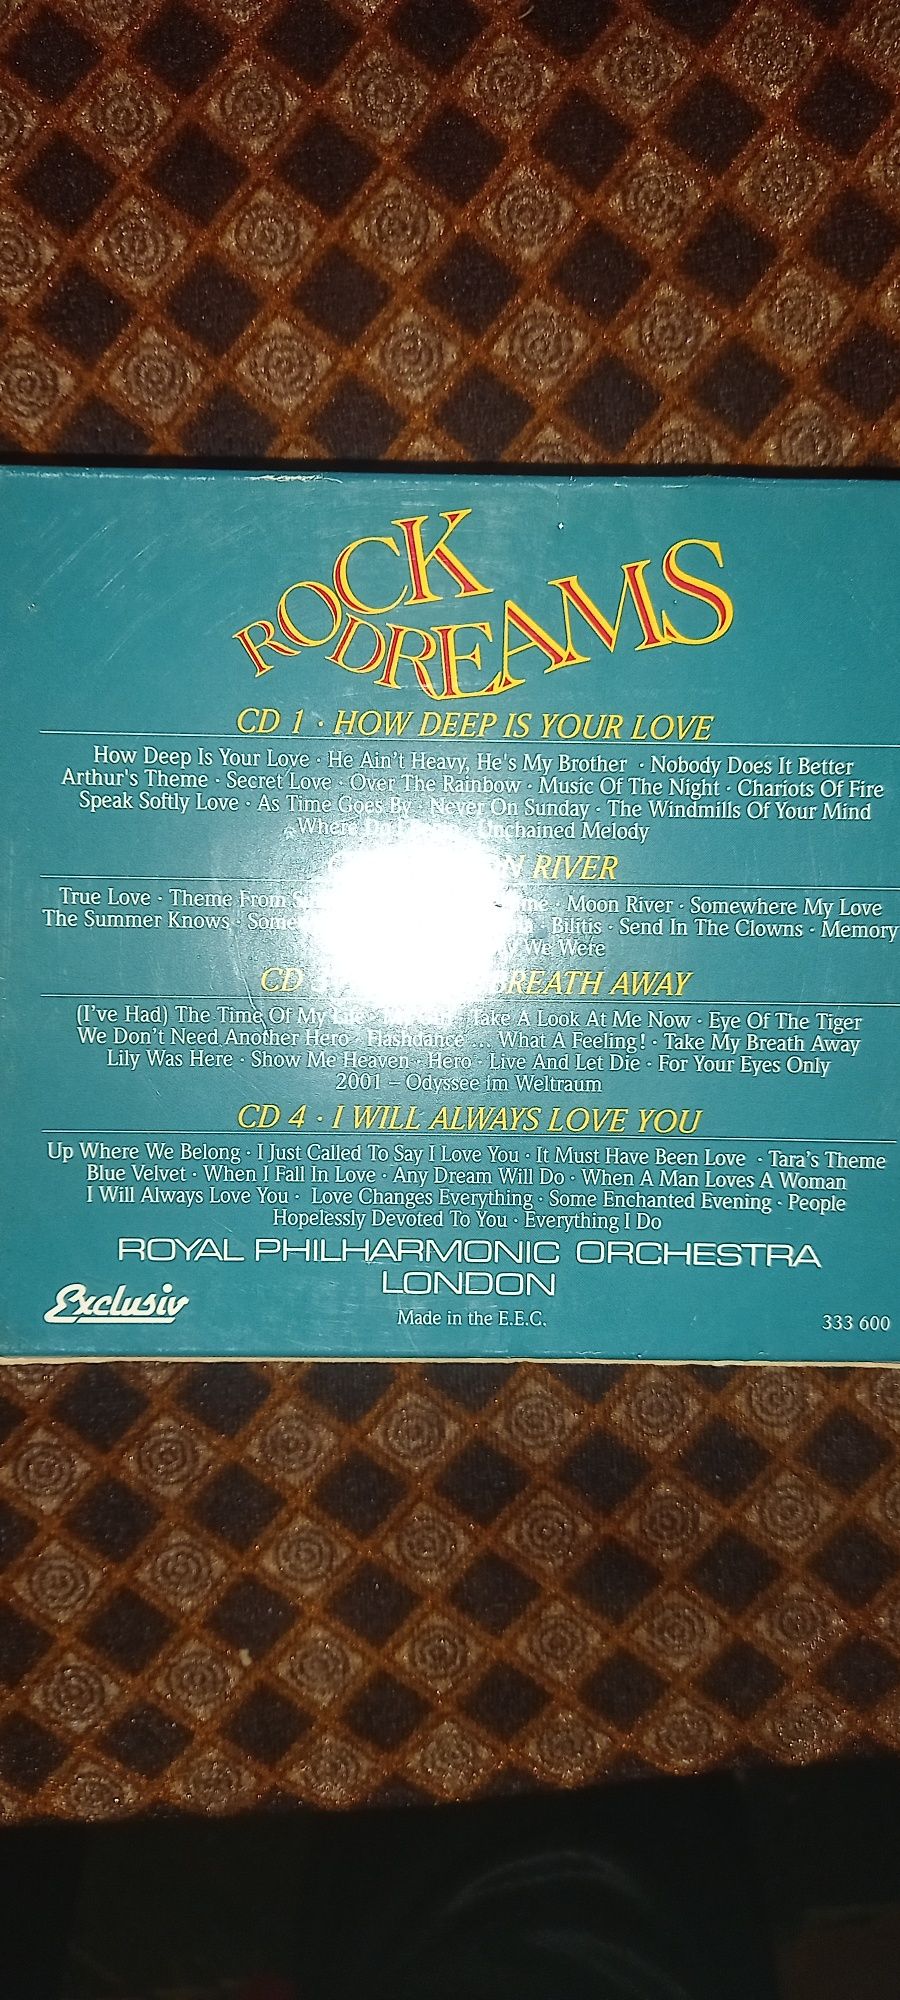 Rock dreams by Royal Filarmonic orchestra, 4CD originale